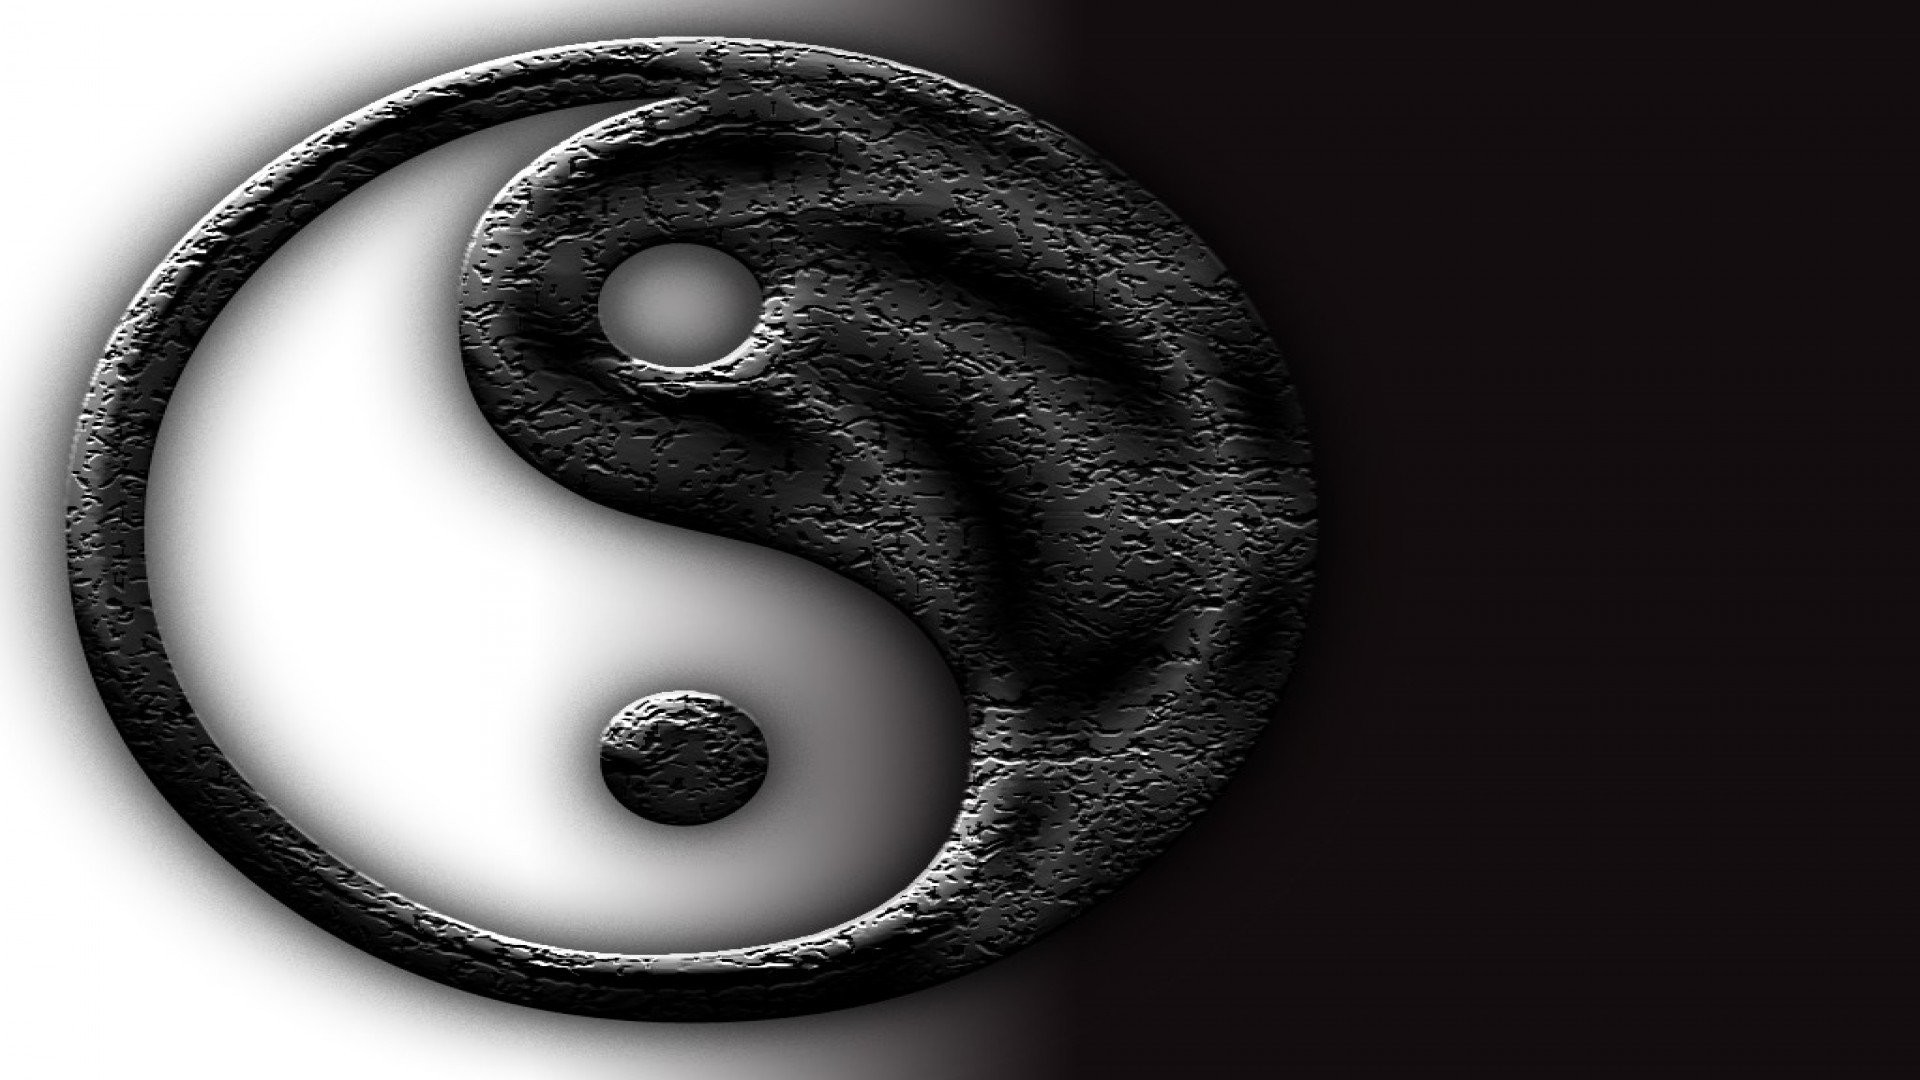 yin yang wallpaper hd,black,eye,organ,monochrome,black and white